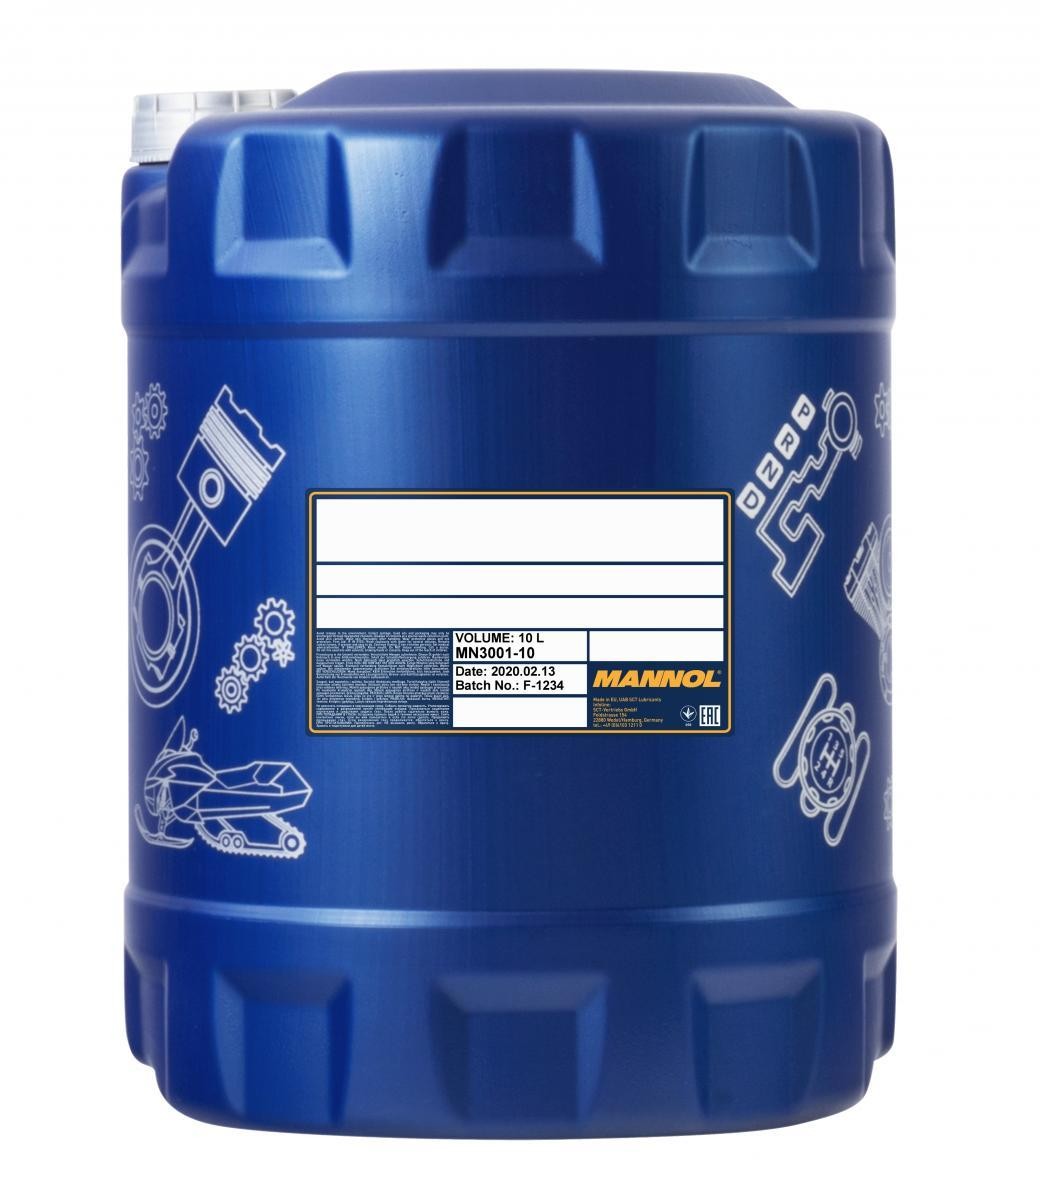 Leer-Kanister / -Flasche für 1, 5, 10 oder 25 Liter Füllmenge inkl